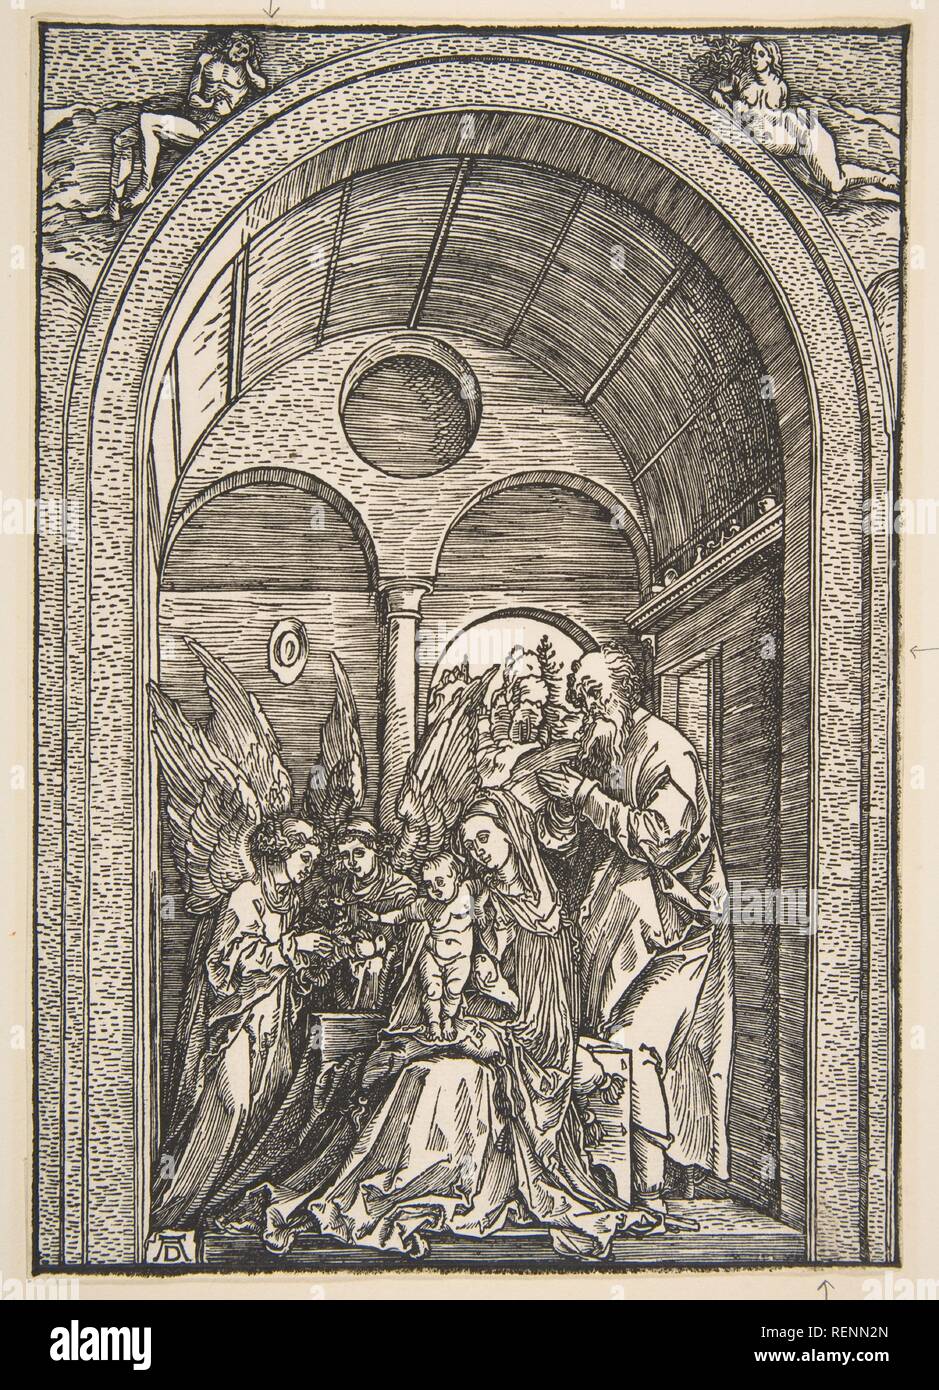 La sainte famille avec deux anges dans une salle voûtée. Artiste : Albrecht Dürer (Nuremberg, Allemagne Nuremberg 1471-1528). Fiche technique : Dimensions : 8 1/2 x 5 15/16 in. (21,5 x 15,1 cm). Date : ca. 1503. Musée : Metropolitan Museum of Art, New York, USA. Banque D'Images